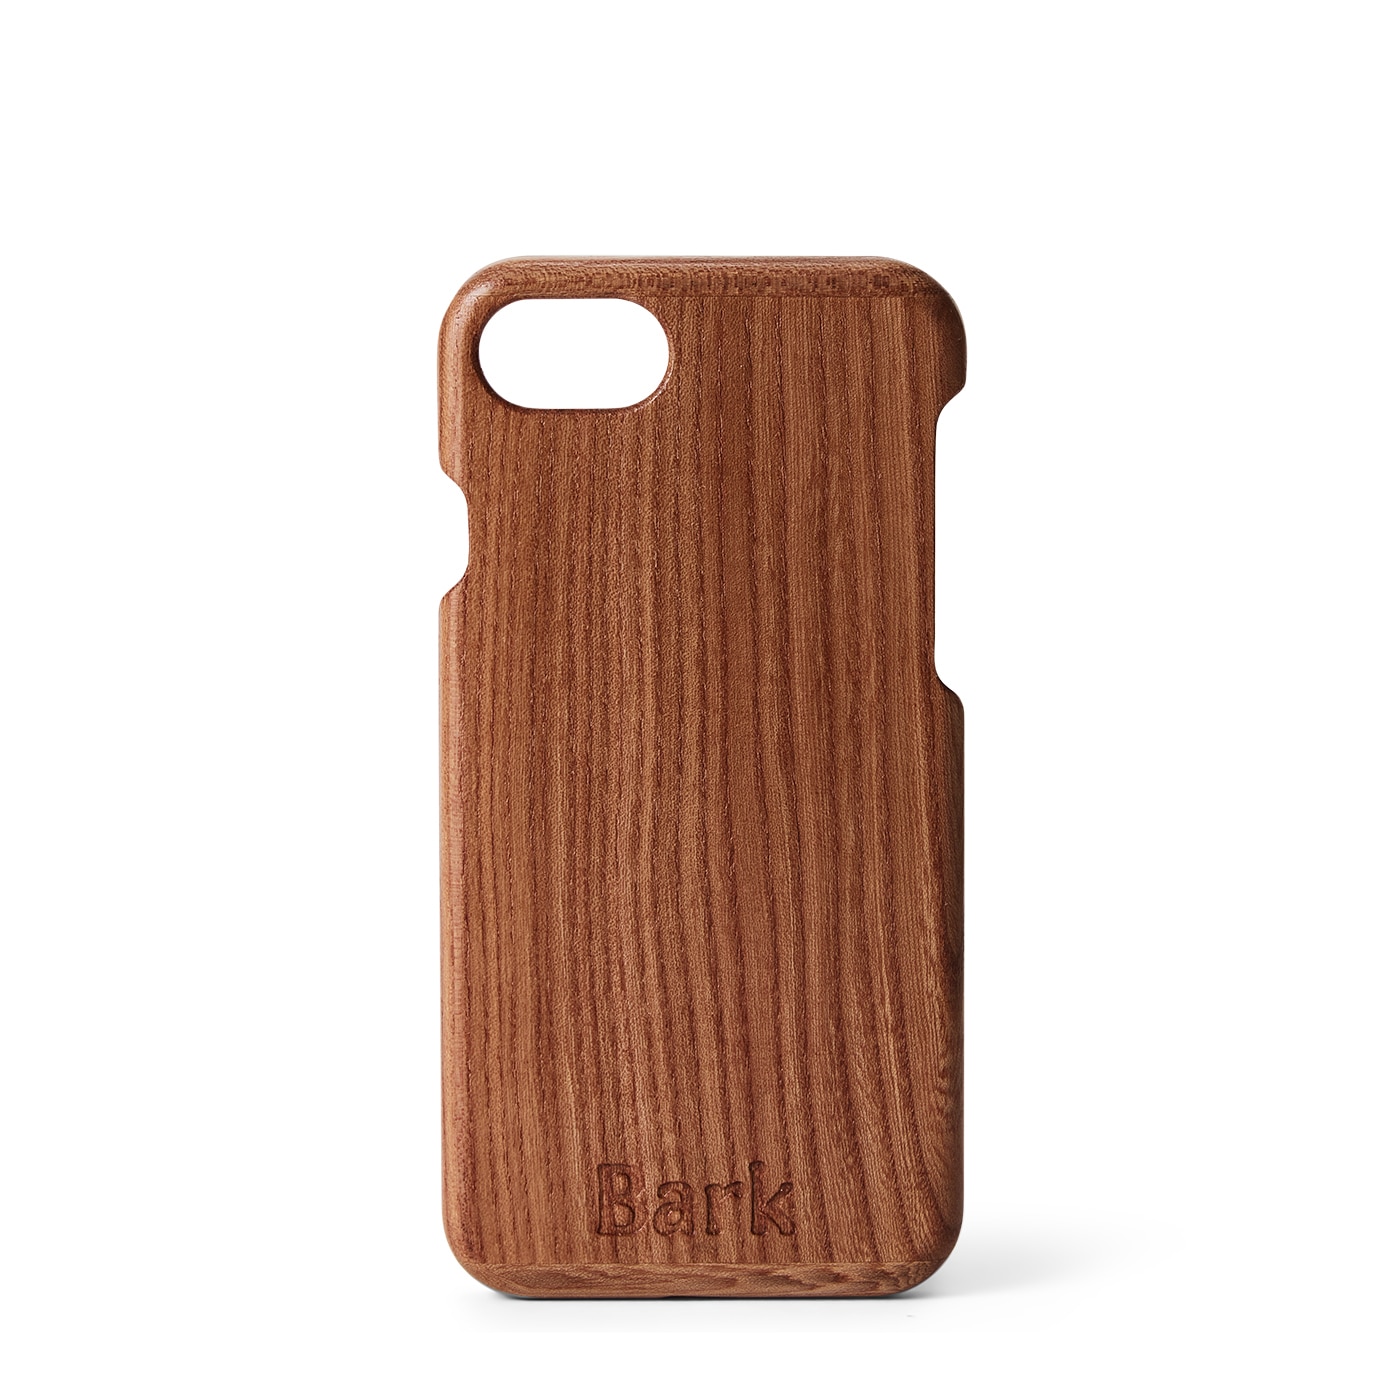 iPhone SE (2020) custodia in legno di latifoglia svedese - Alm